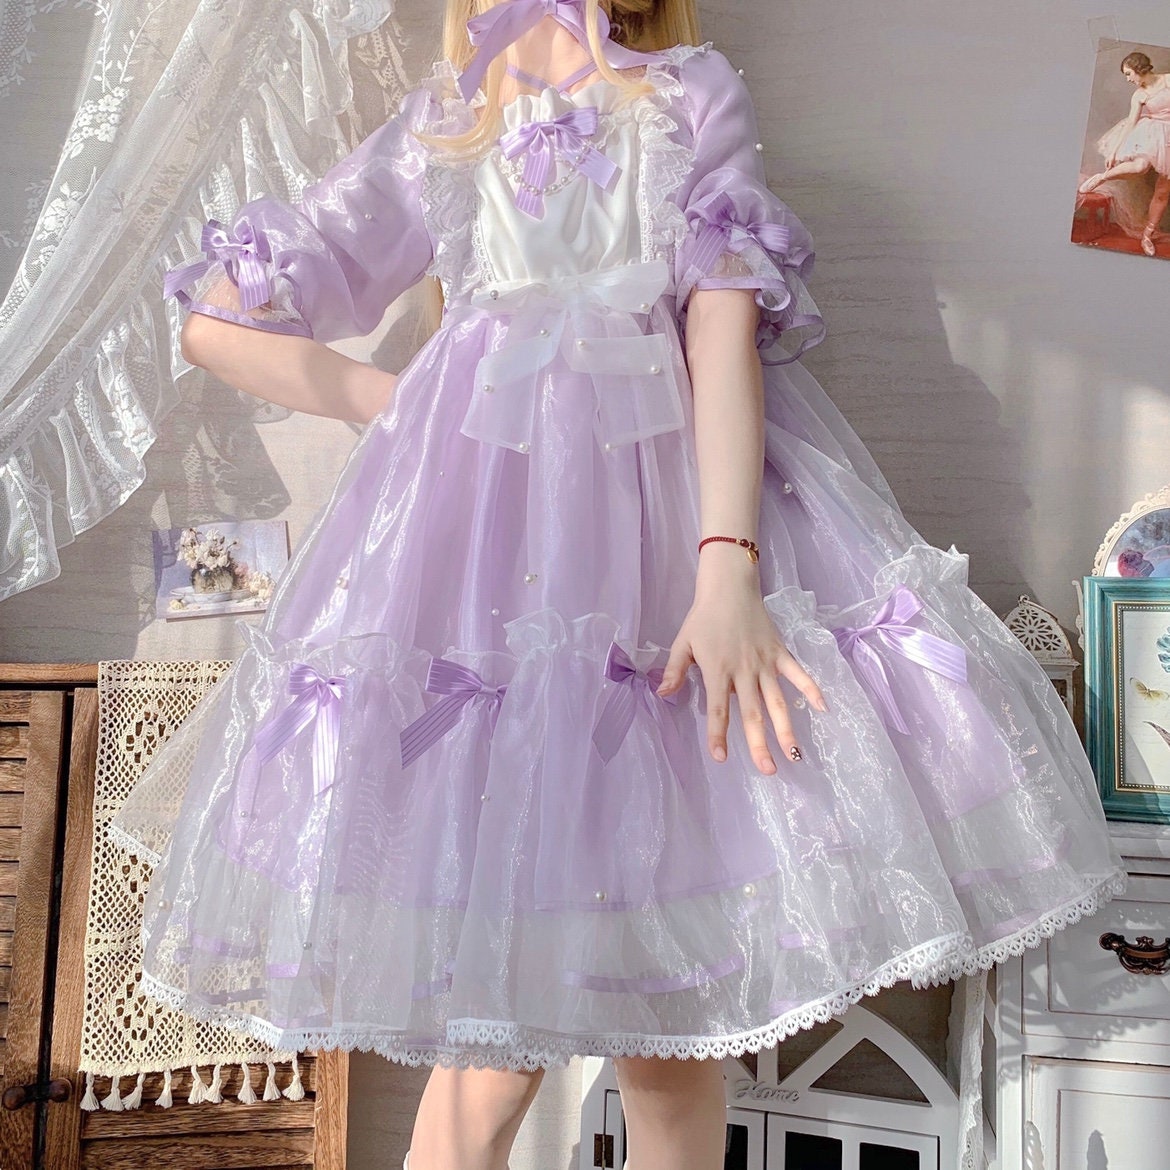 Y2K Kawaii Lolita Mini Dress - Cute Purple & Blue Sweet Lolita Skirt with Bow